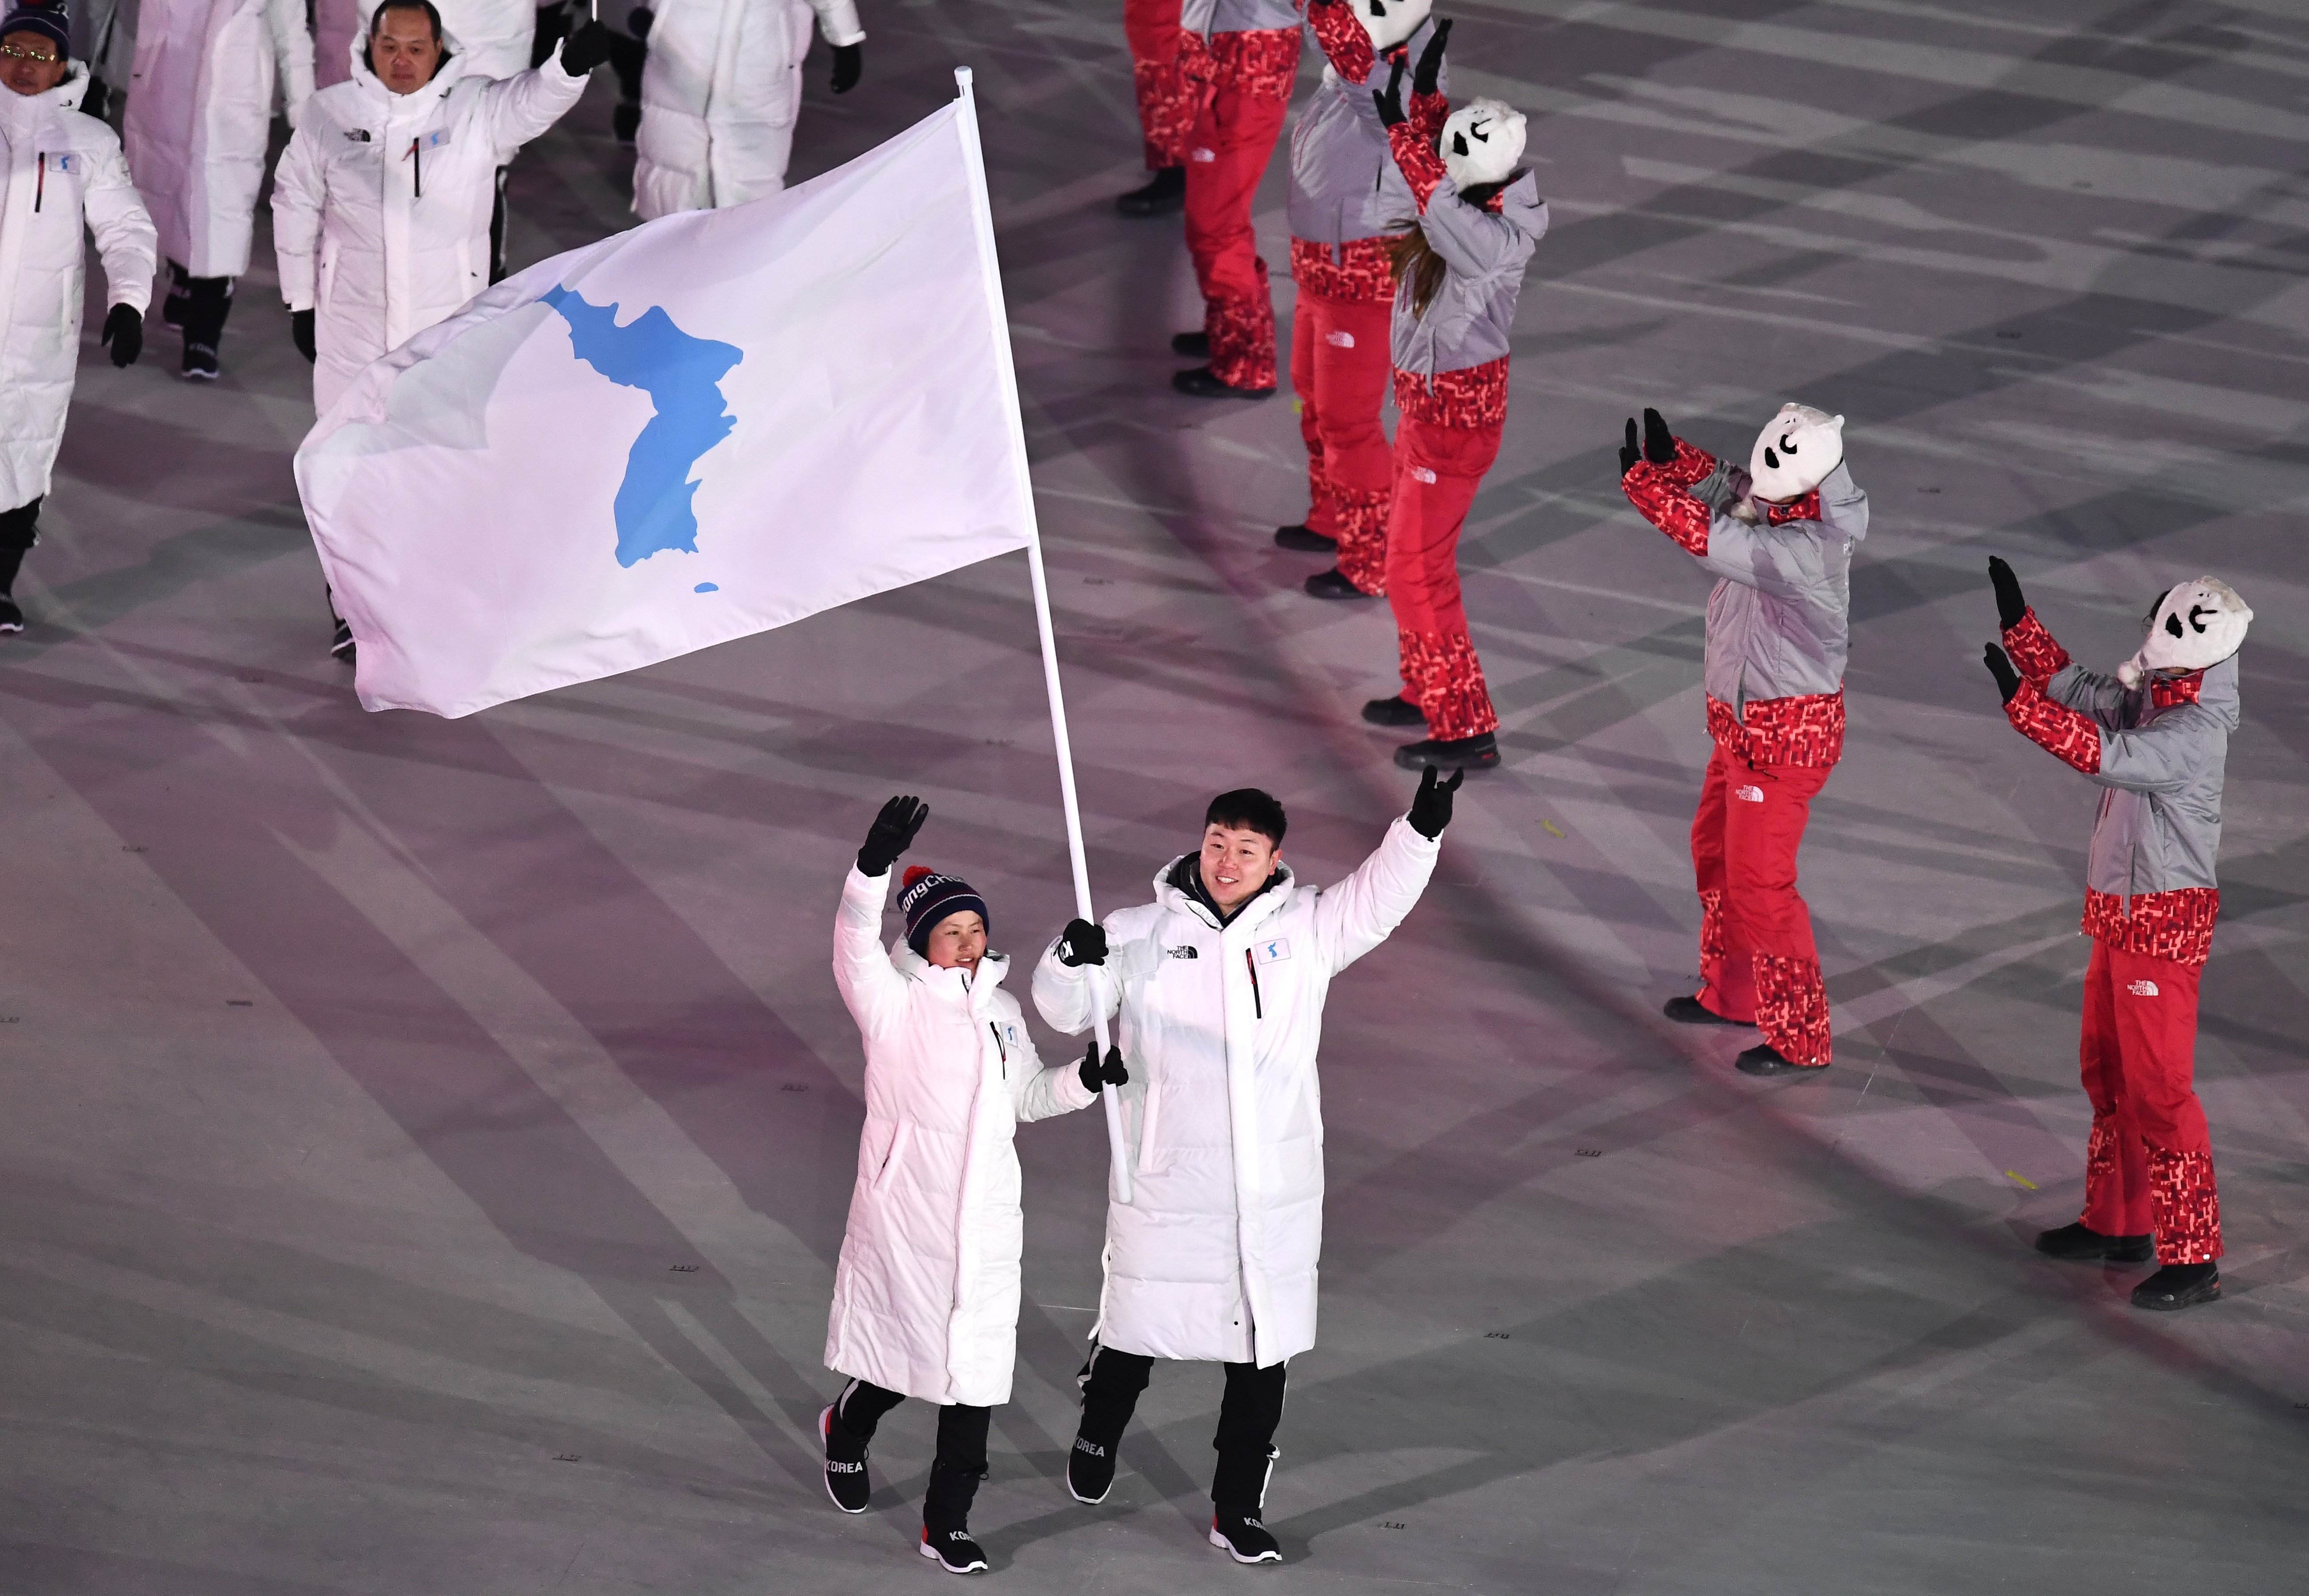 Les dues Corees desfilen sota una mateixa bandera